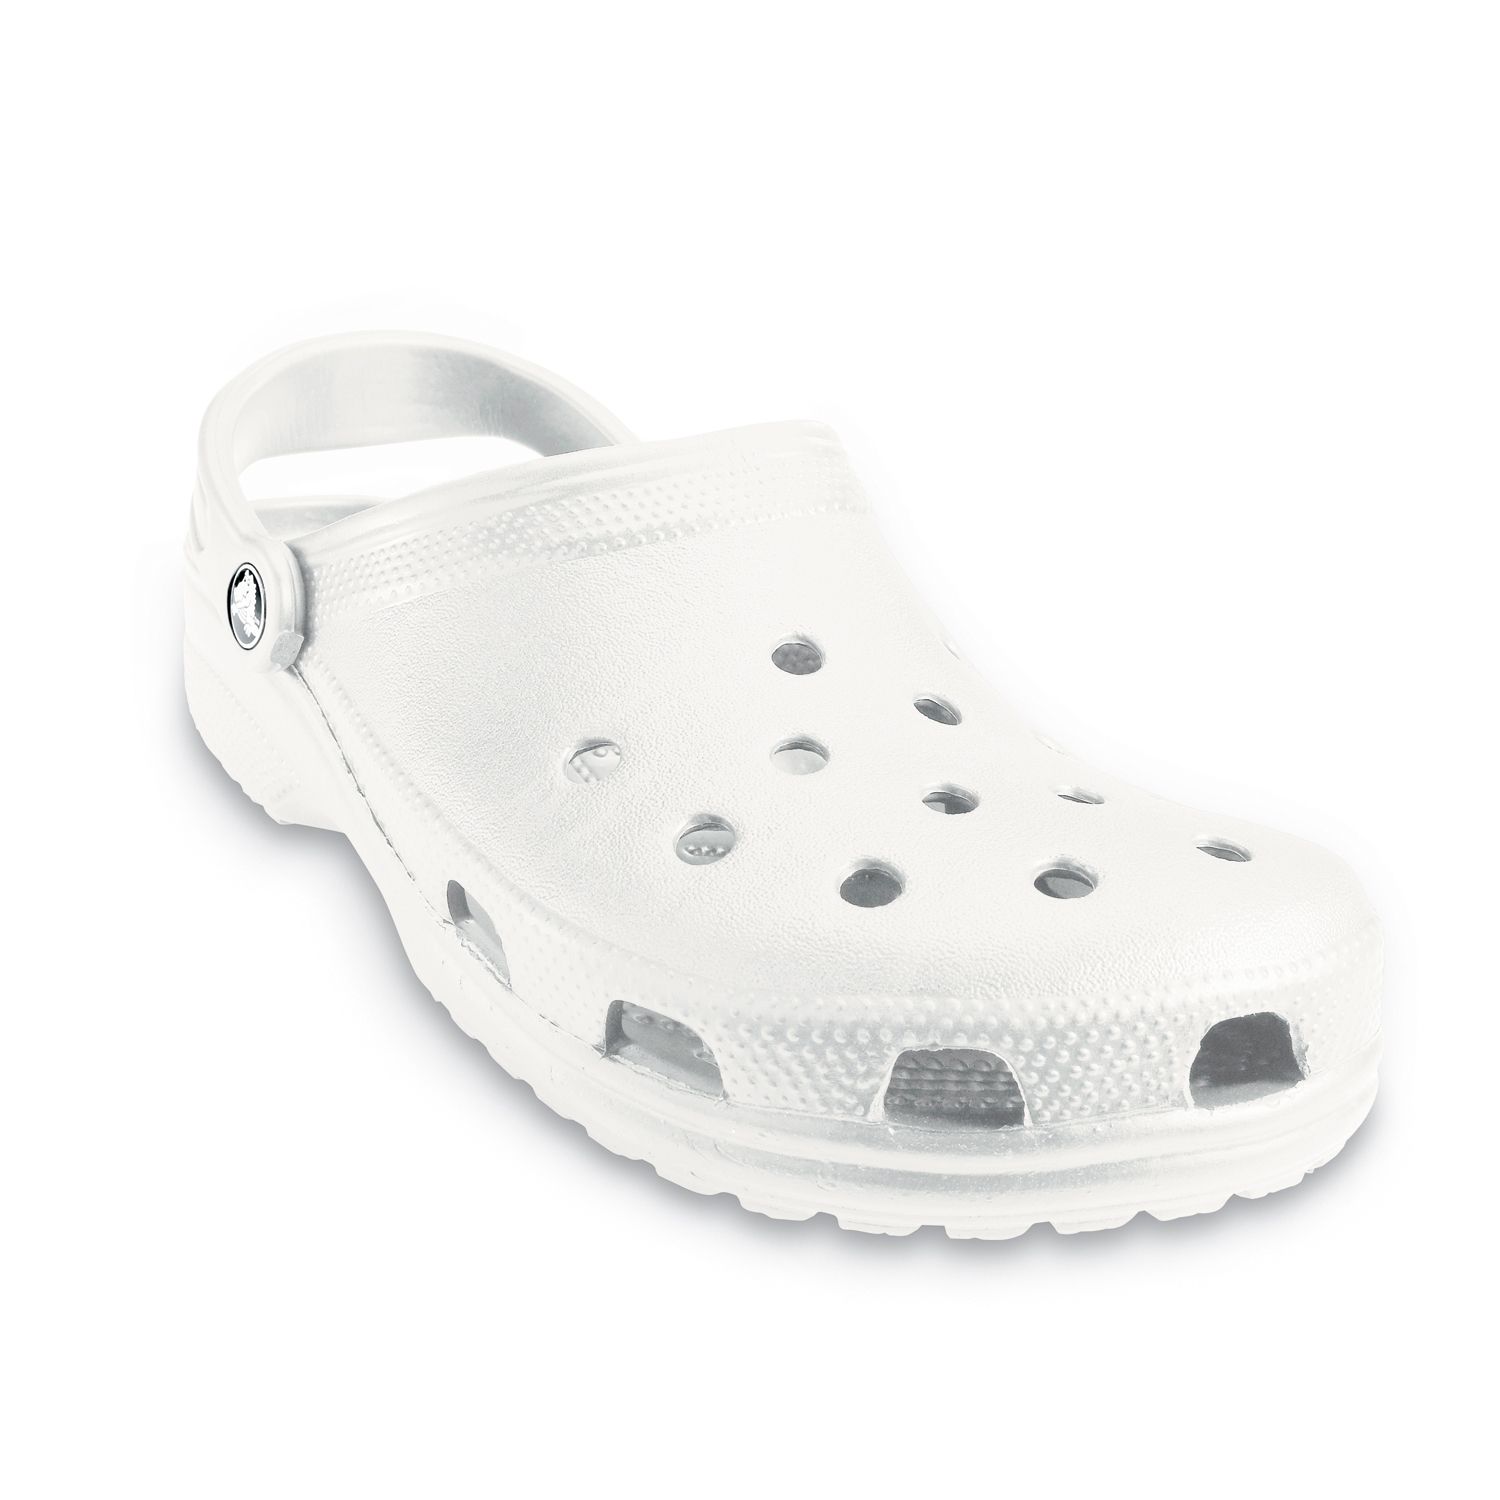 crocs womens white